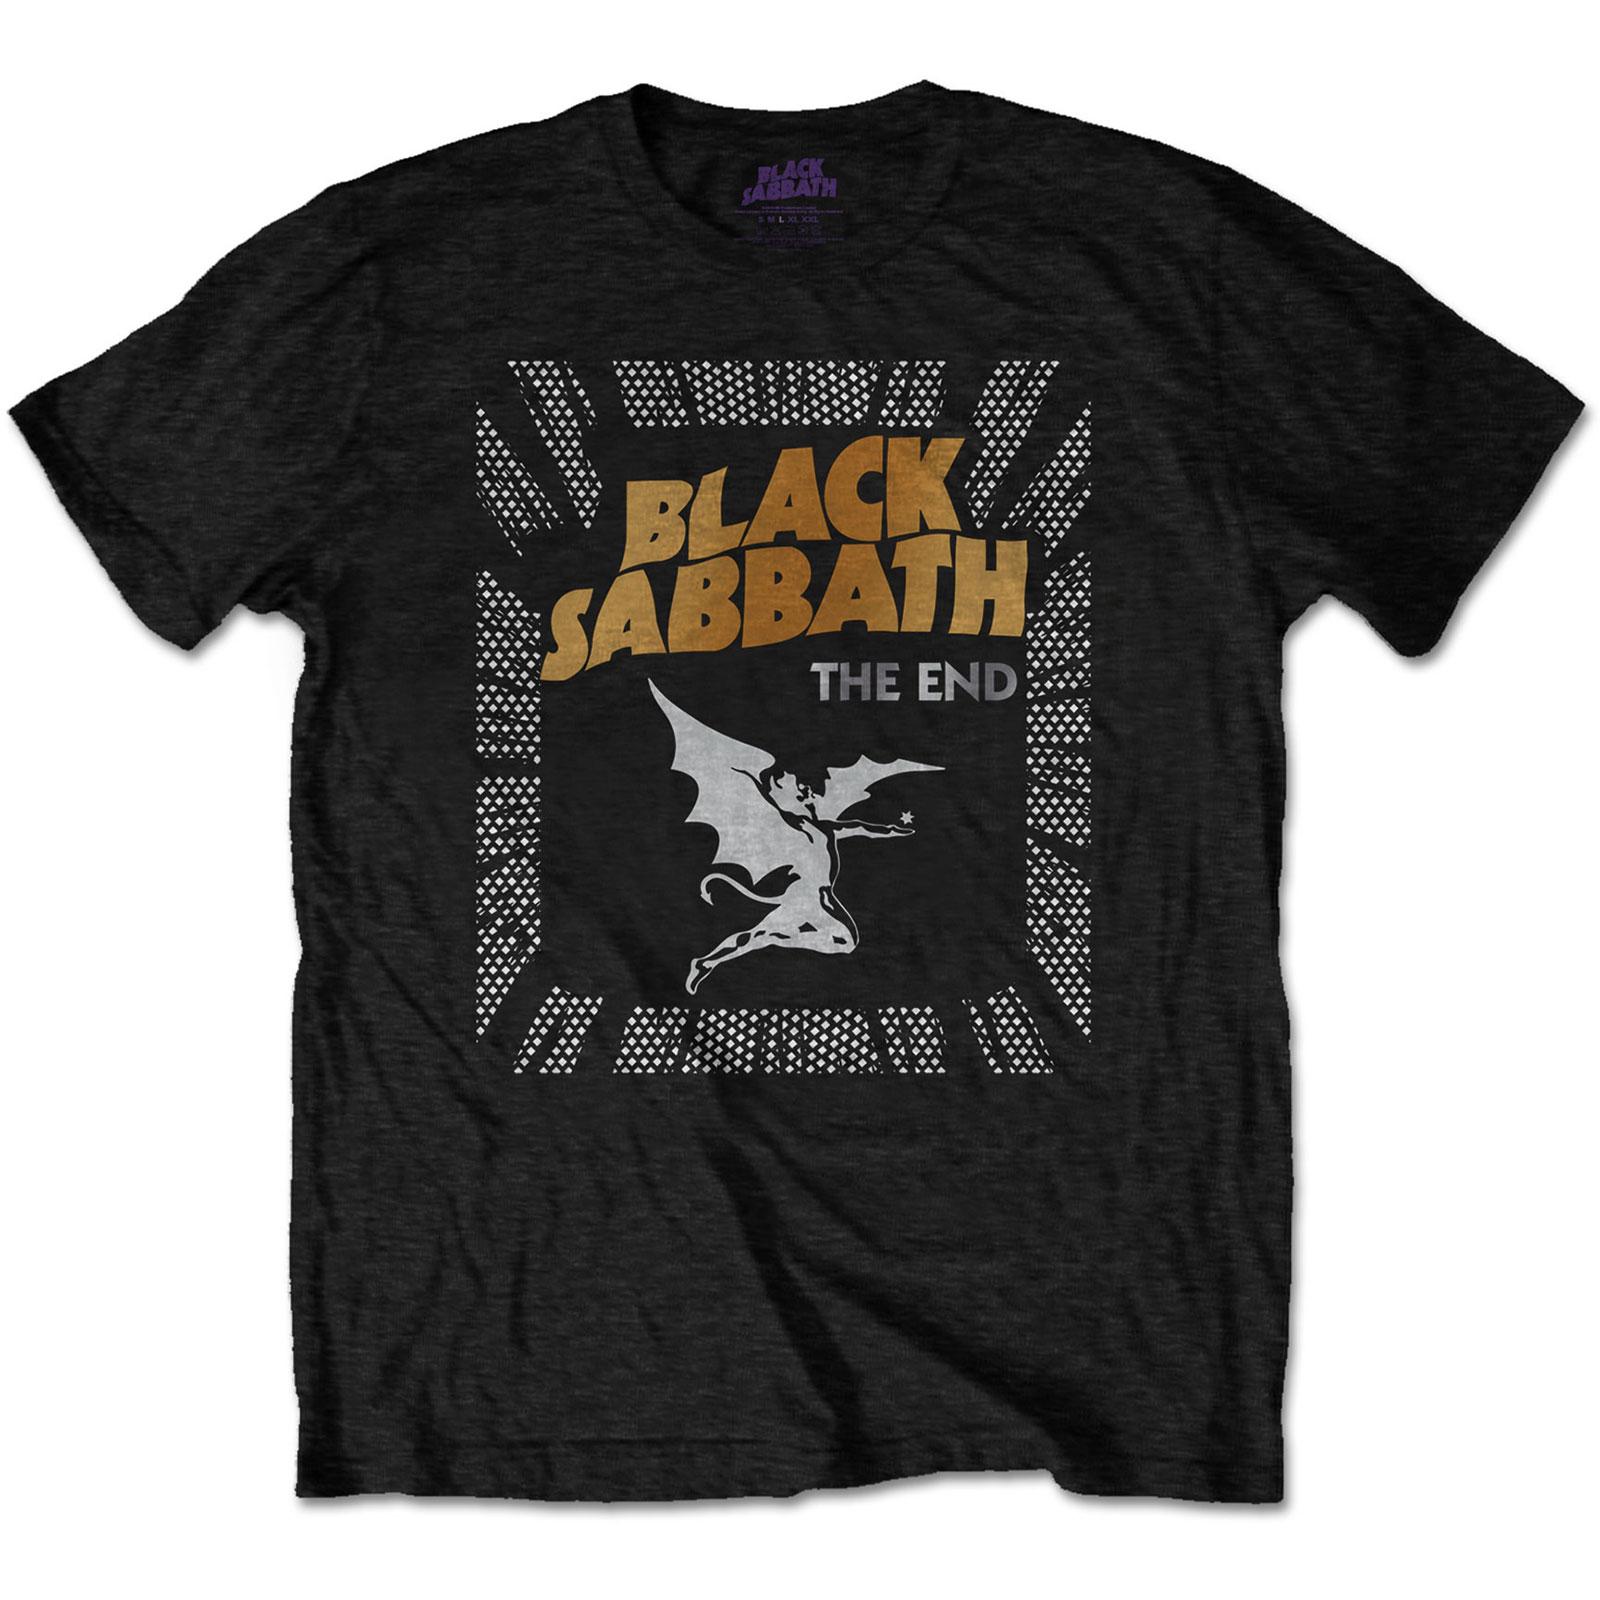 T-shirt Black Sabbath end